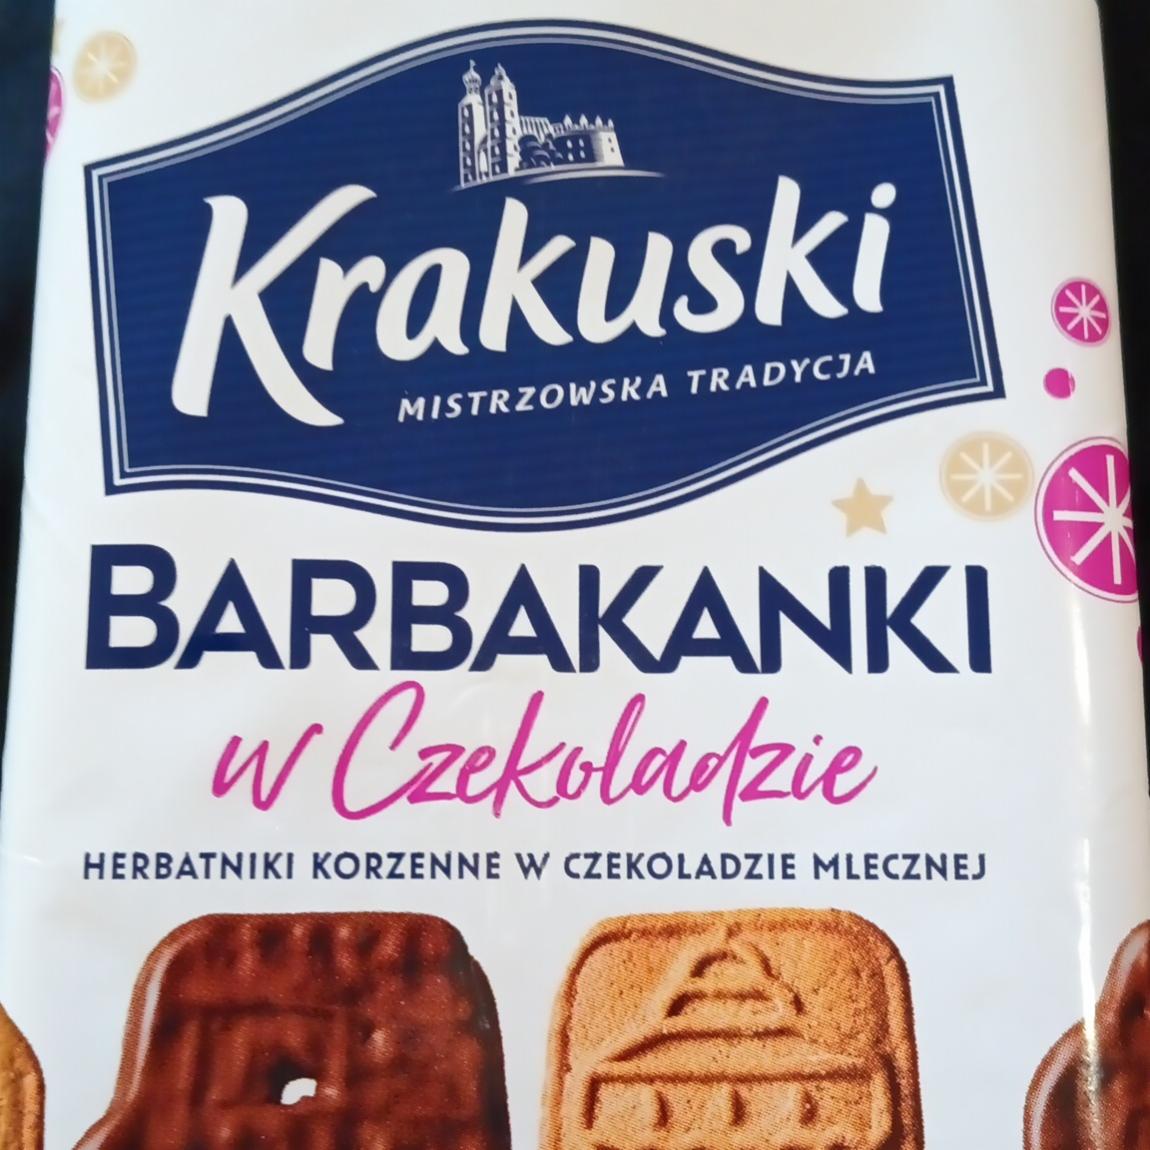 Fotografie - Barbakanki w czekoladzie Krakuski